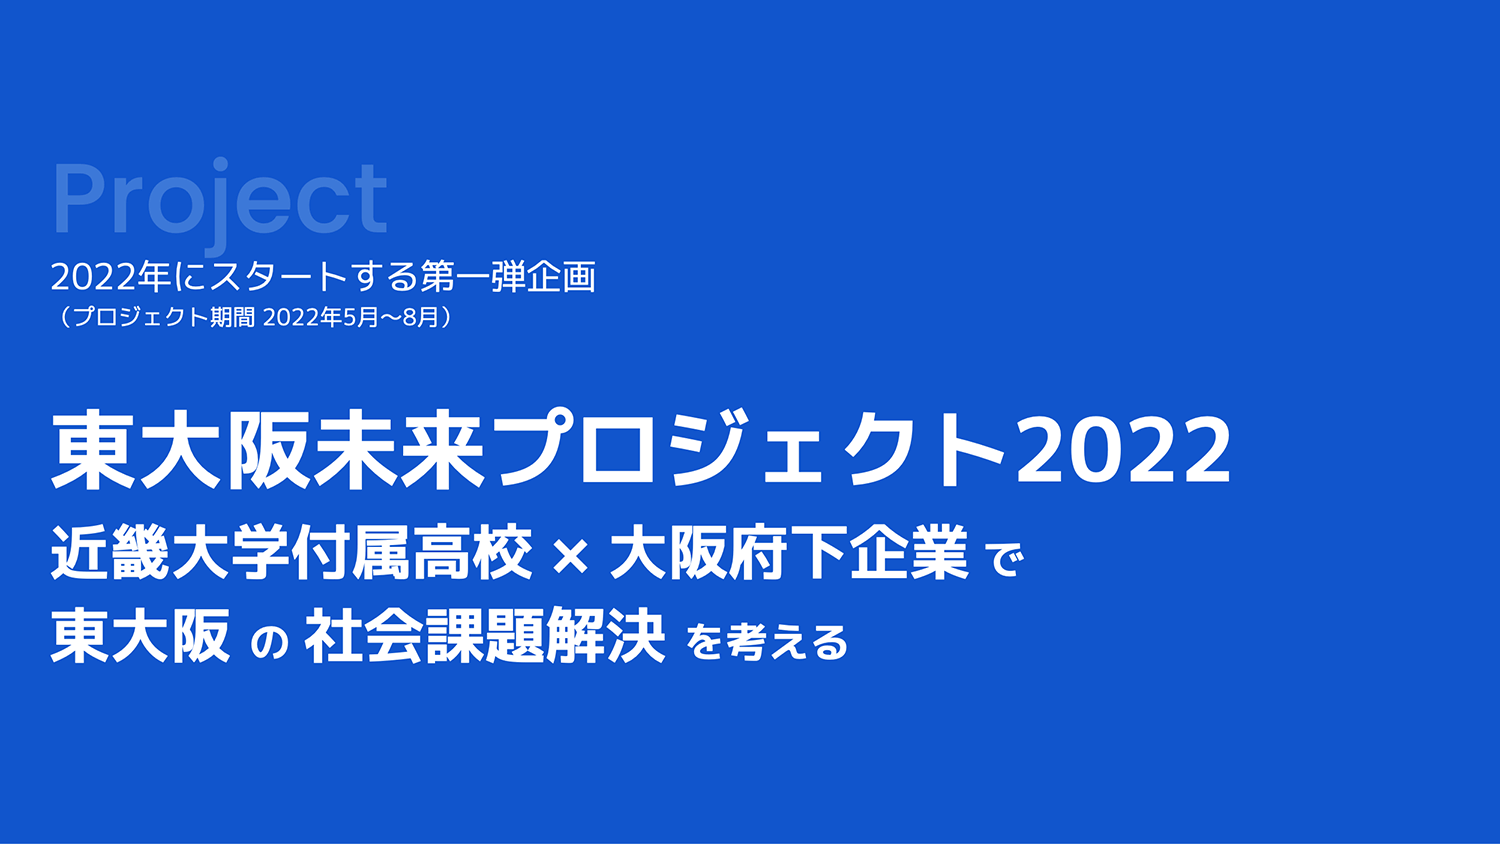 地域と企業をつなぐ活動のひとつとして「東大阪未来プロジェクト2022」を始めました